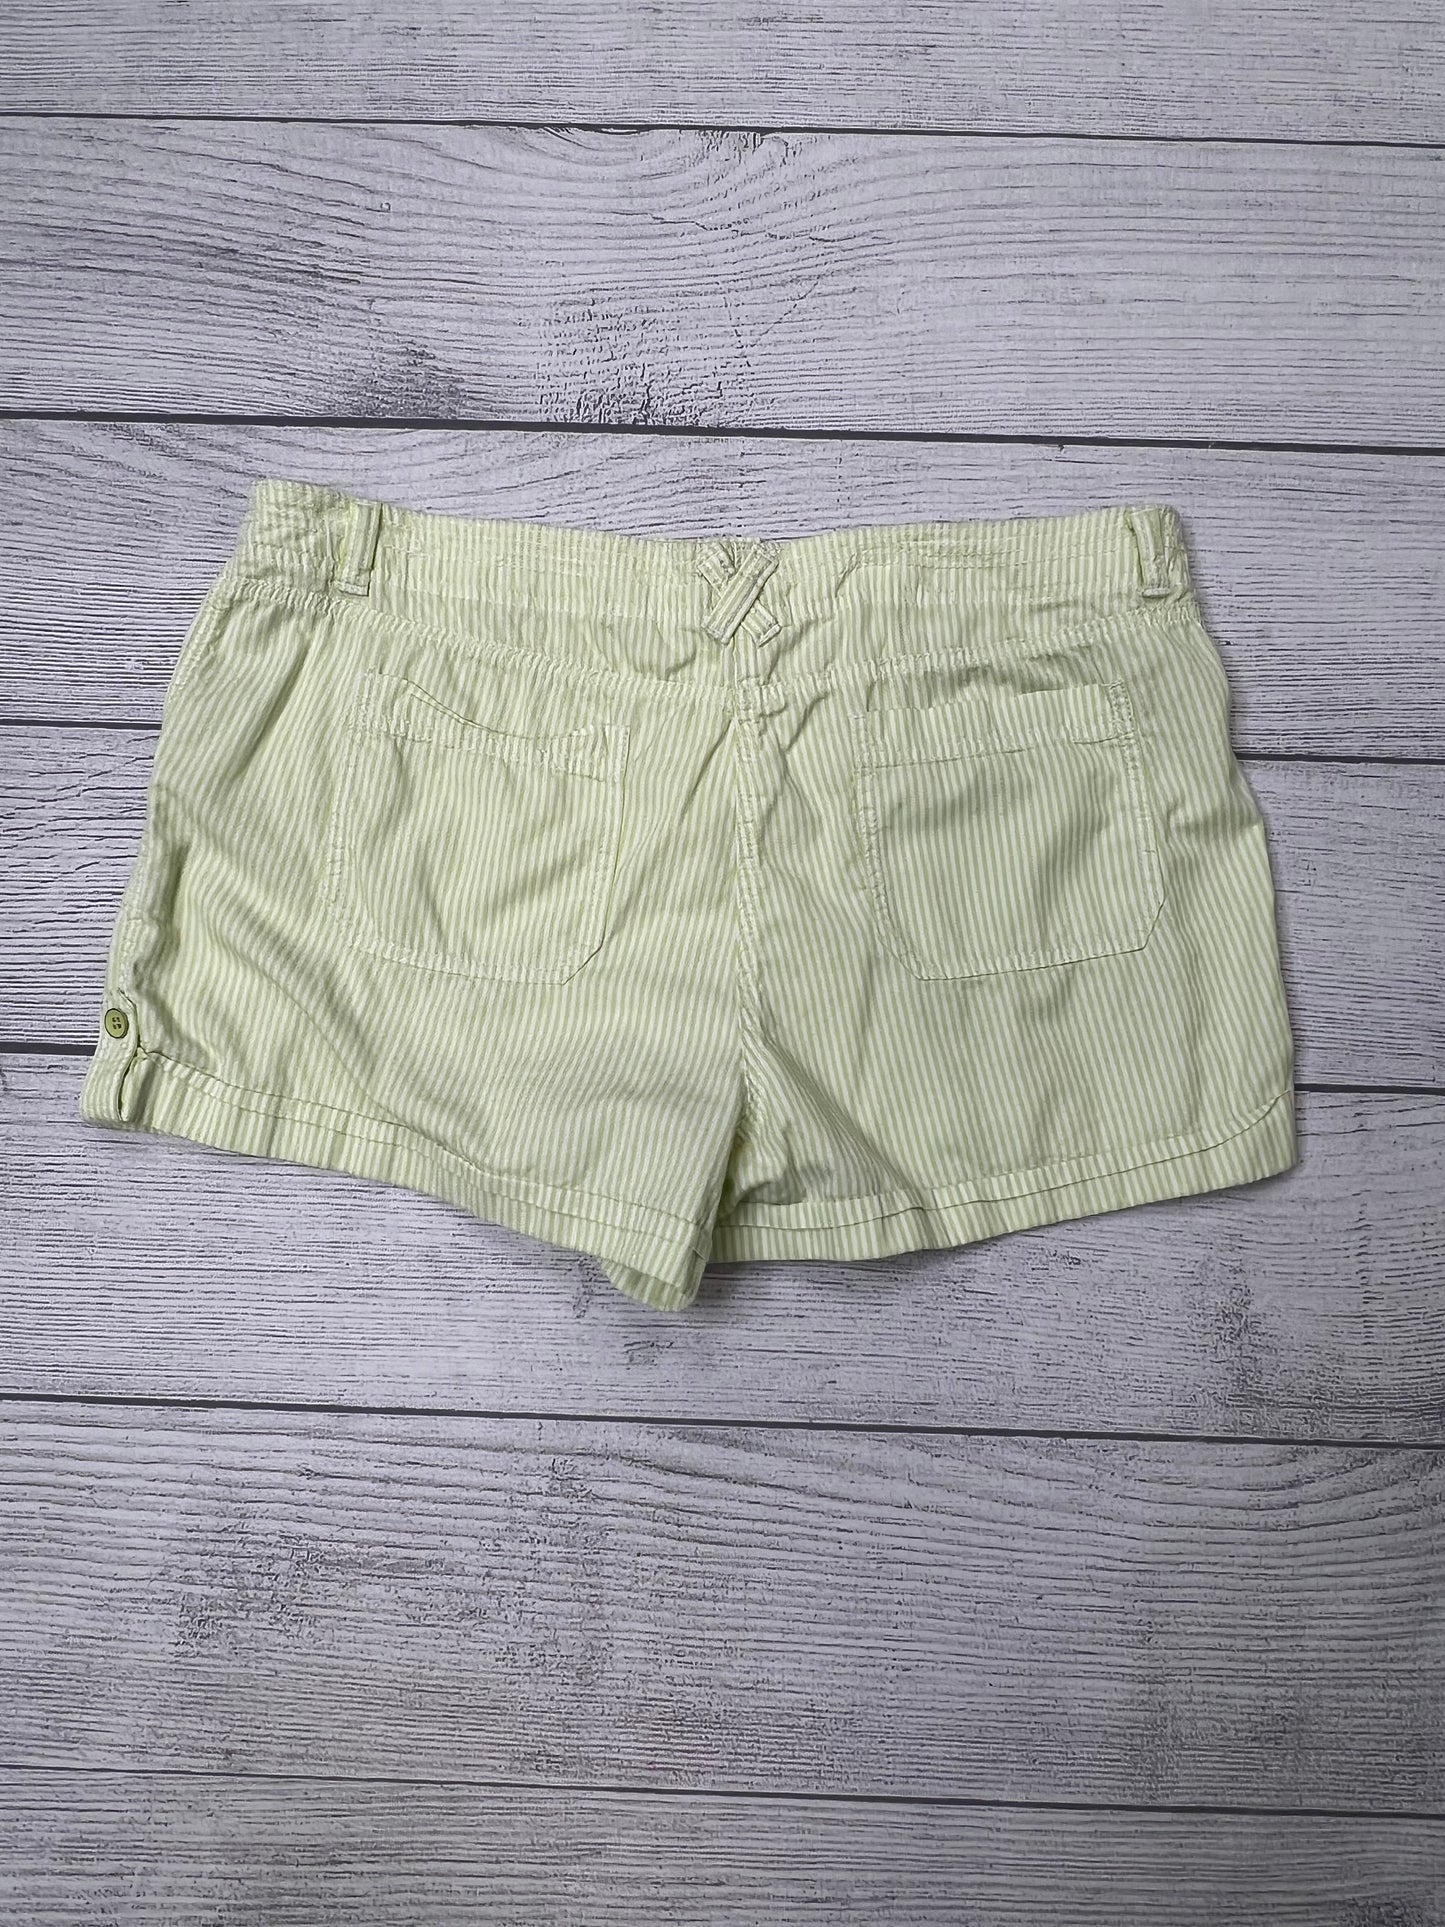 Shorts By Loft  Size: 16